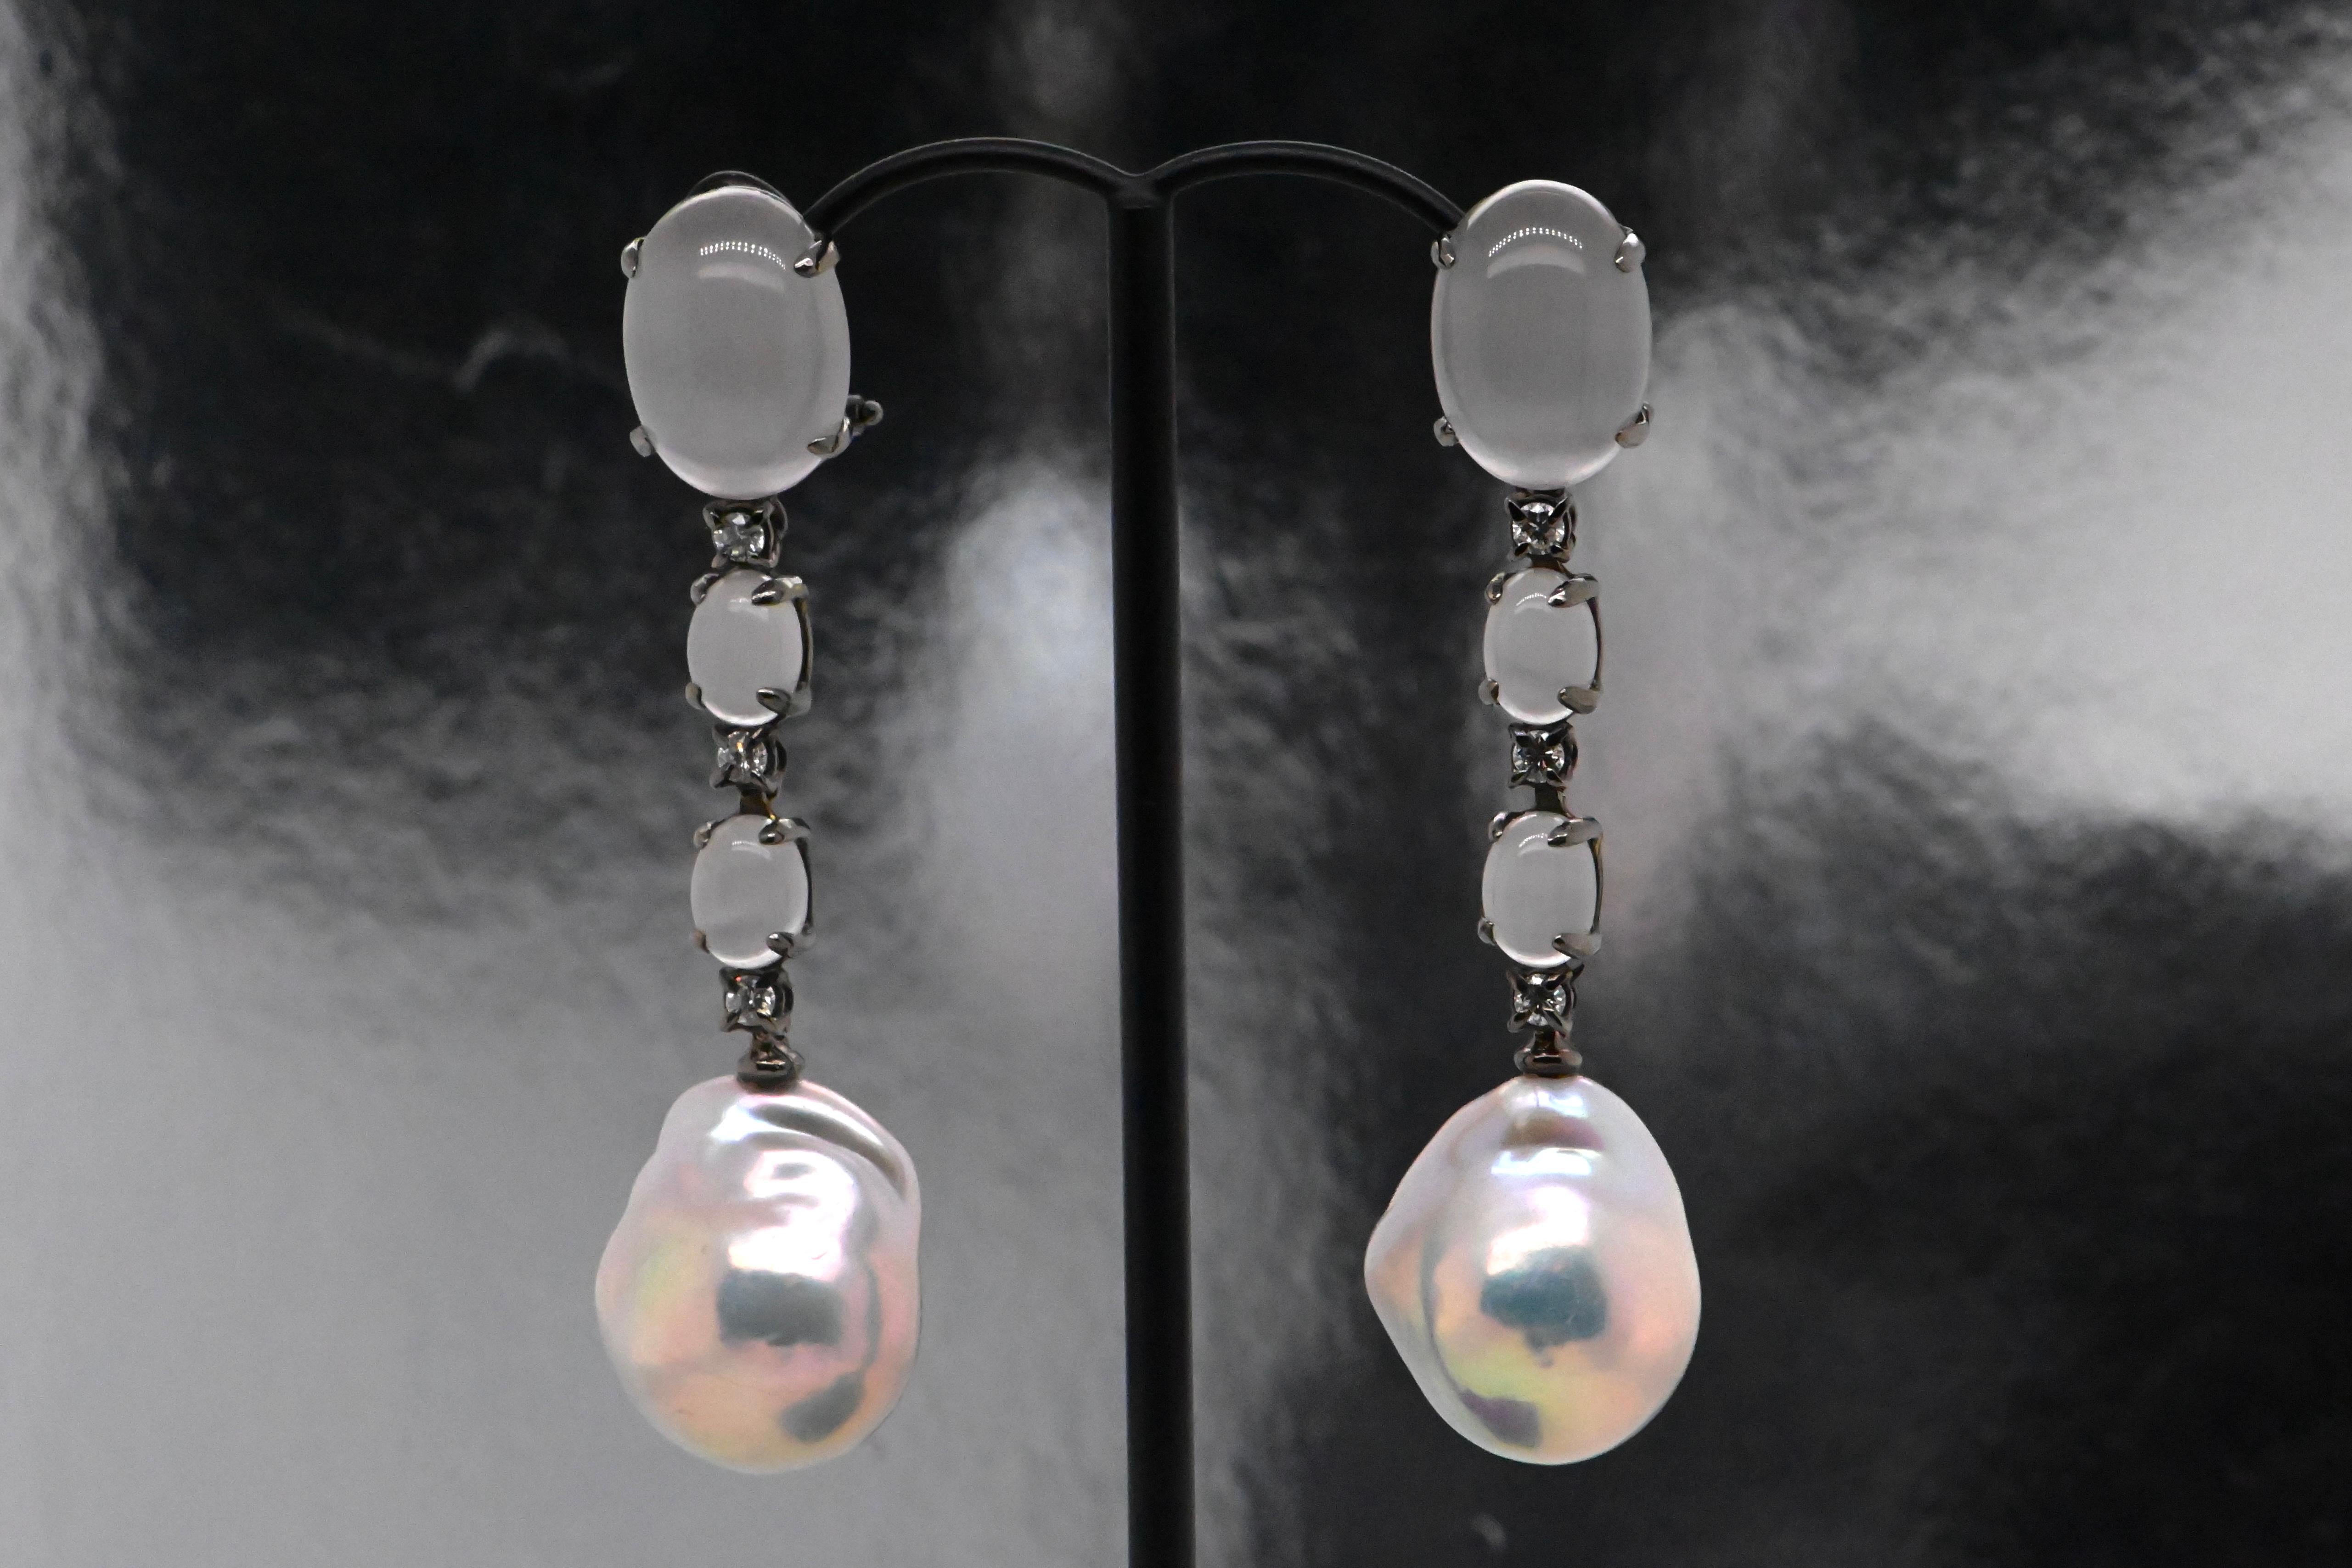 Le résultat d'un travail artisanal méticuleux et de la beauté naturelle des perles. Chaque pièce est unique, car les perles baroques présentent des formes irrégulières et organiques, ajoutant une touche artistique et authentique à votre look.